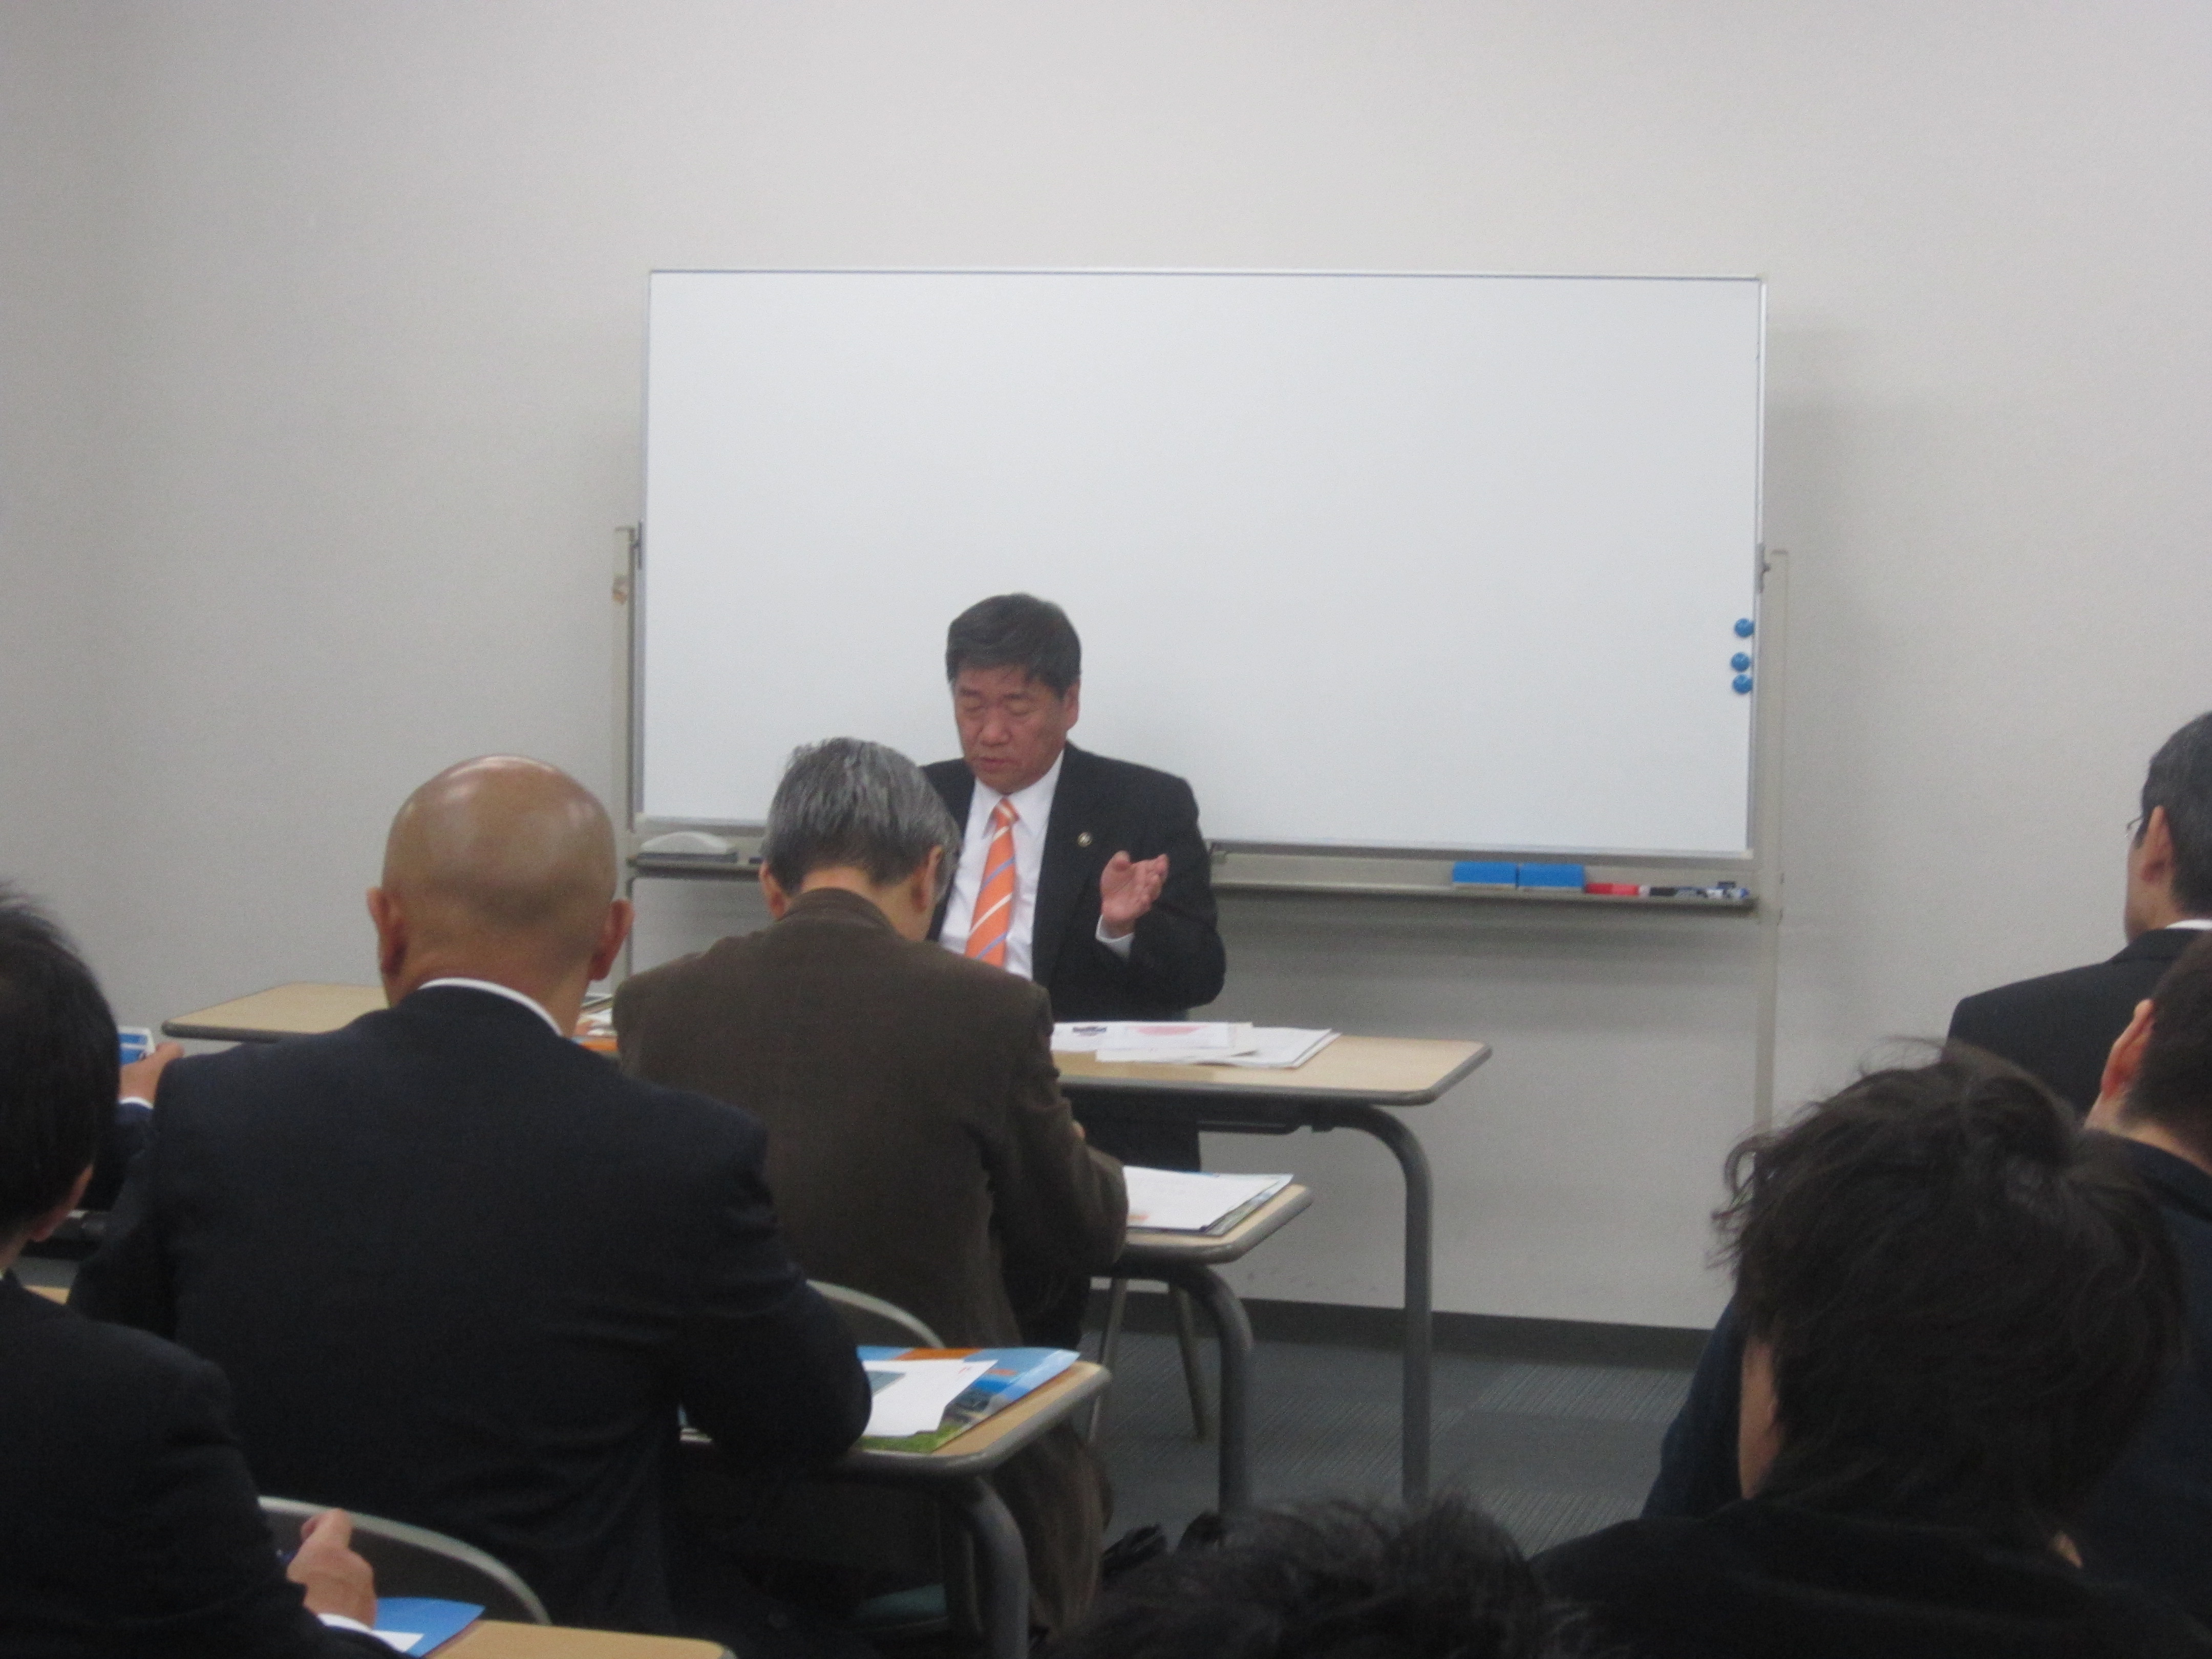 IMG 1917 - 2012年11月27日AOsuki第4回勉強会八戸市小林市長